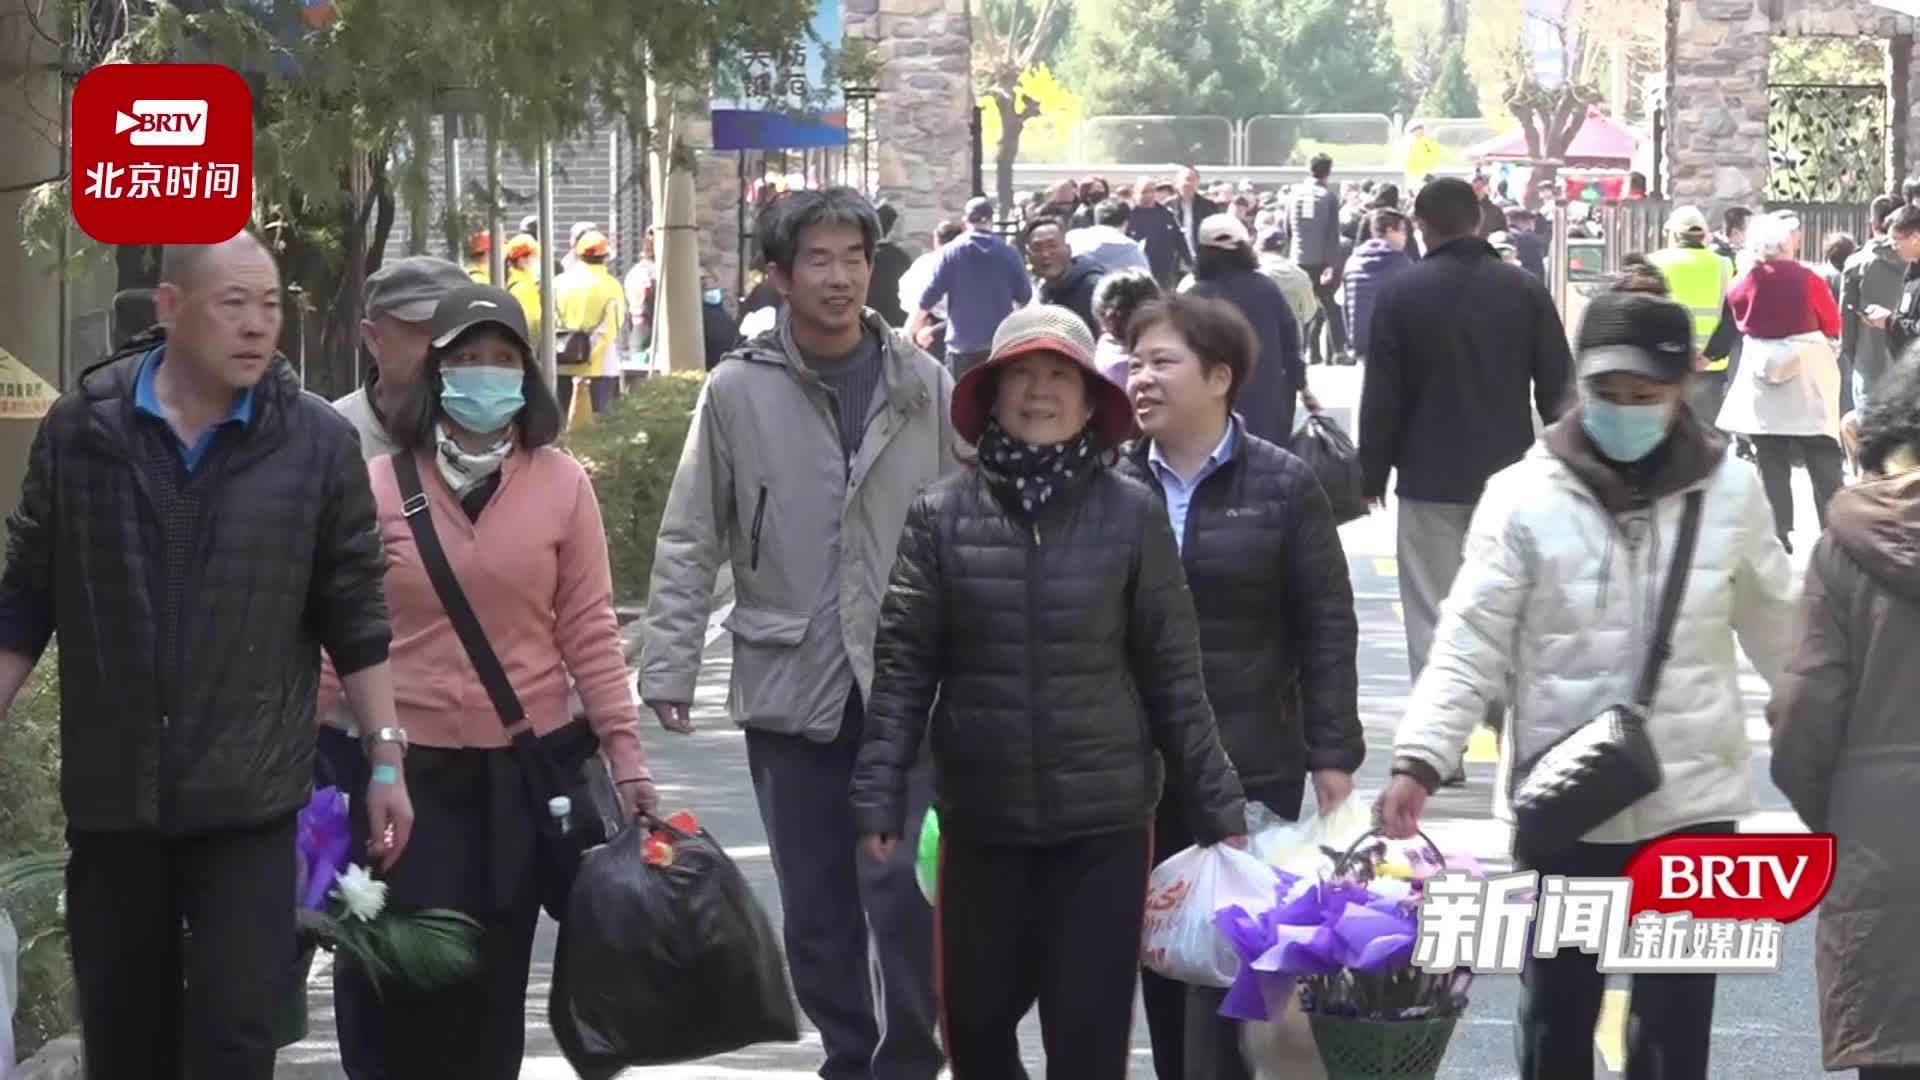 预计今天昌平区将迎约10万祭扫群众 北京警方确保祭扫安全